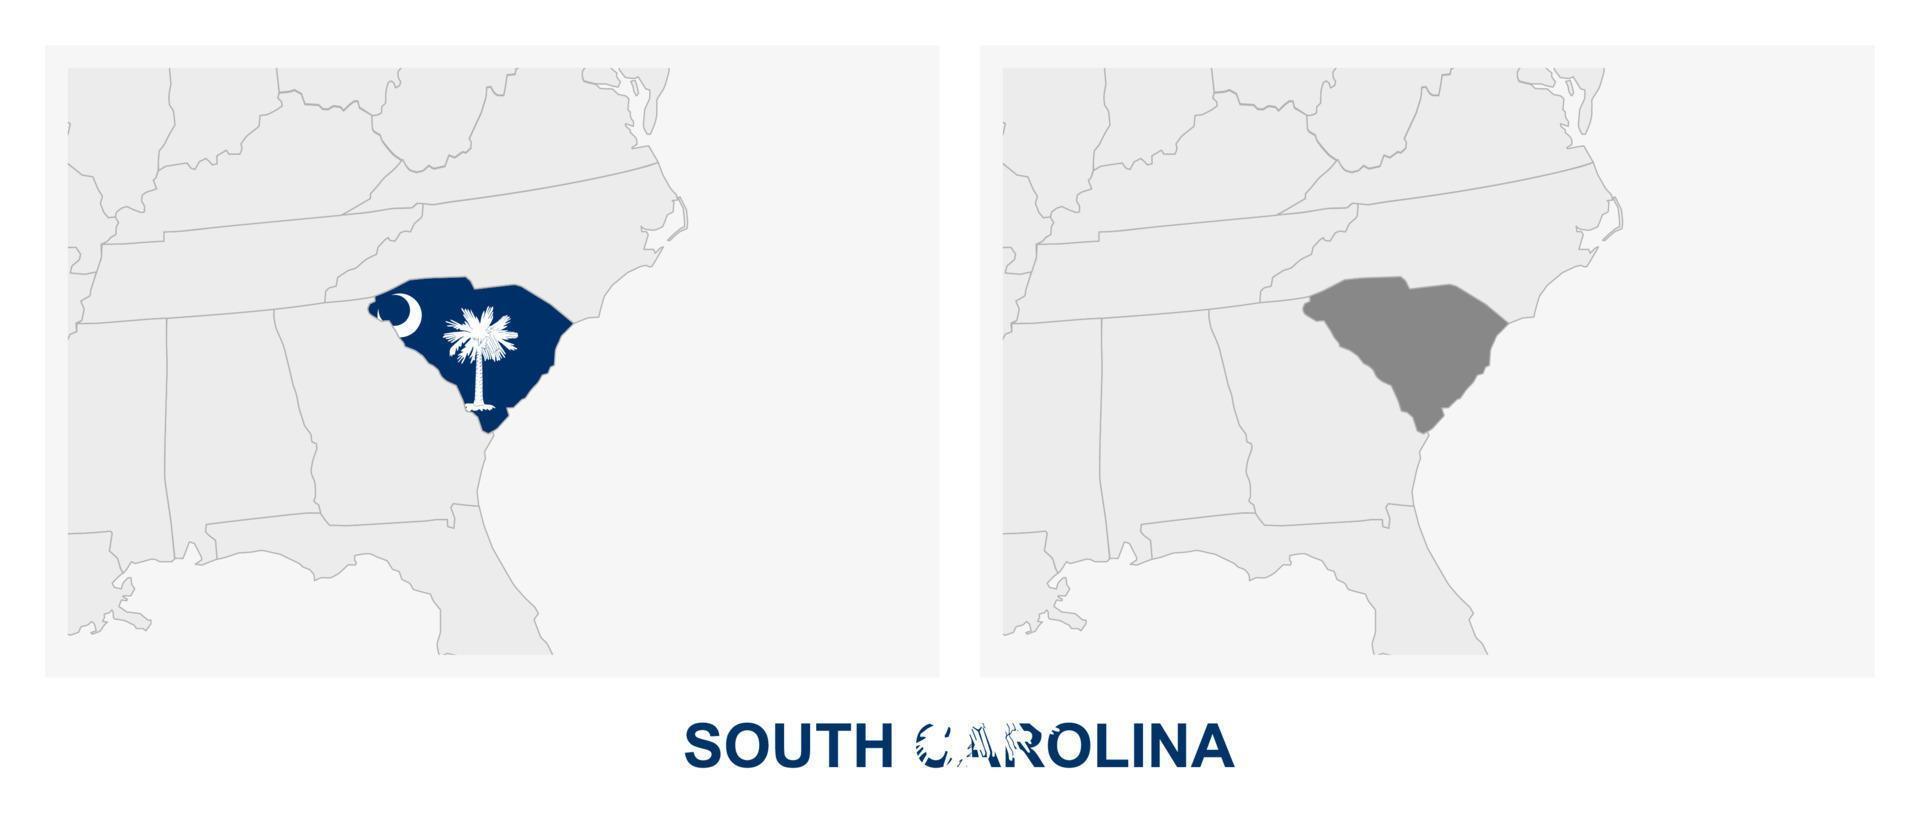 dos versiones del mapa del estado estadounidense de carolina del sur, con la bandera de carolina del sur y resaltada en gris oscuro. vector